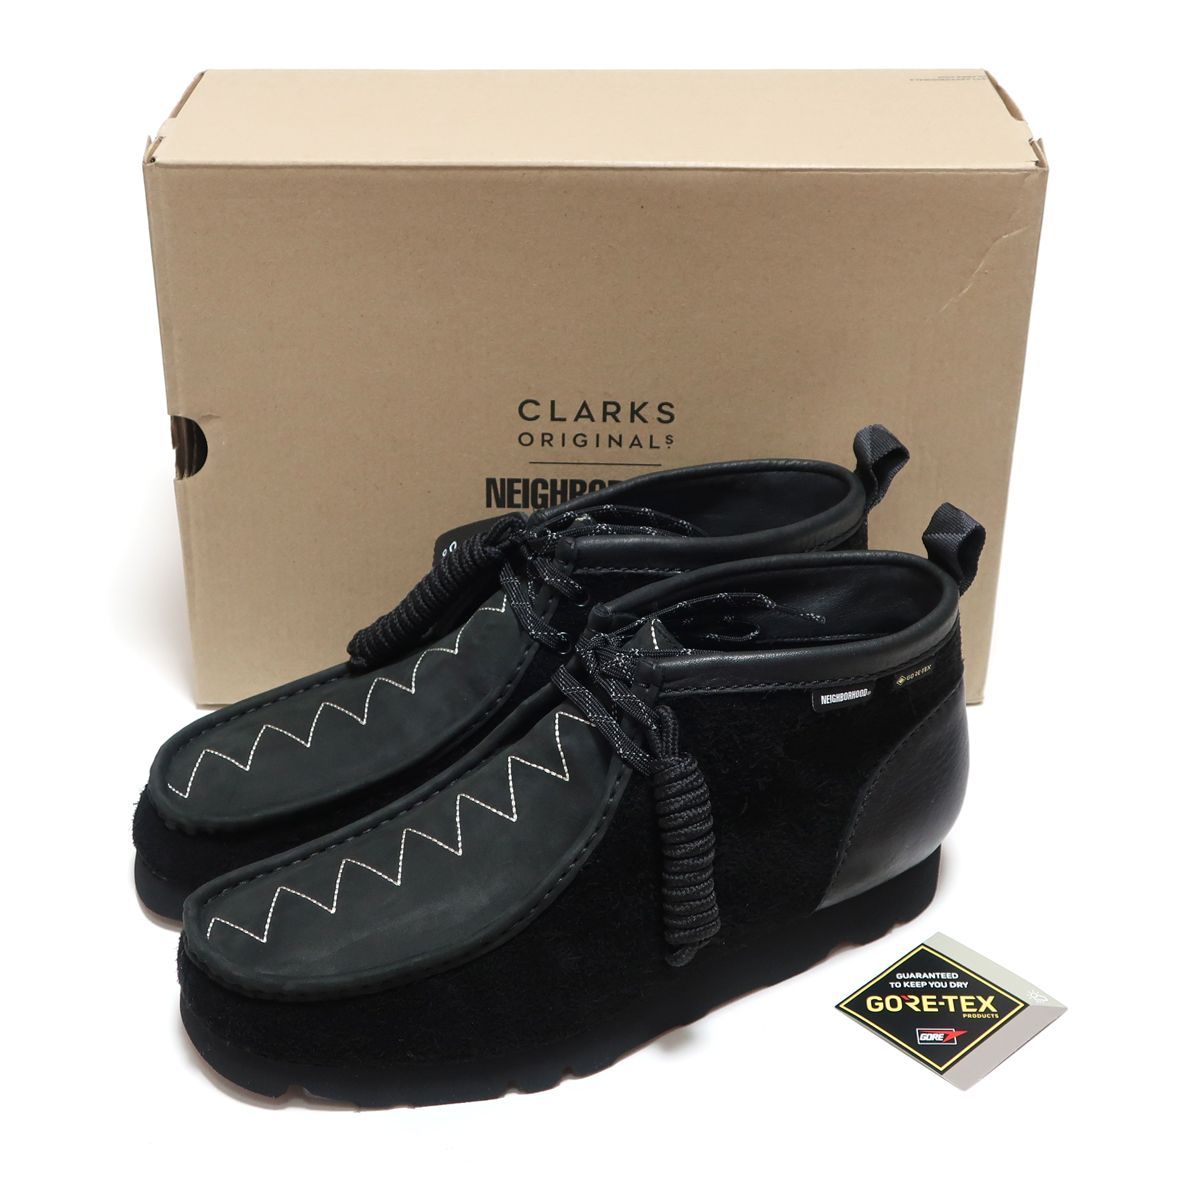 CLARKS ORIGINALS x NEIGHBORHOOD WALLABEE BOOT GTX BLACK UK7 25cm